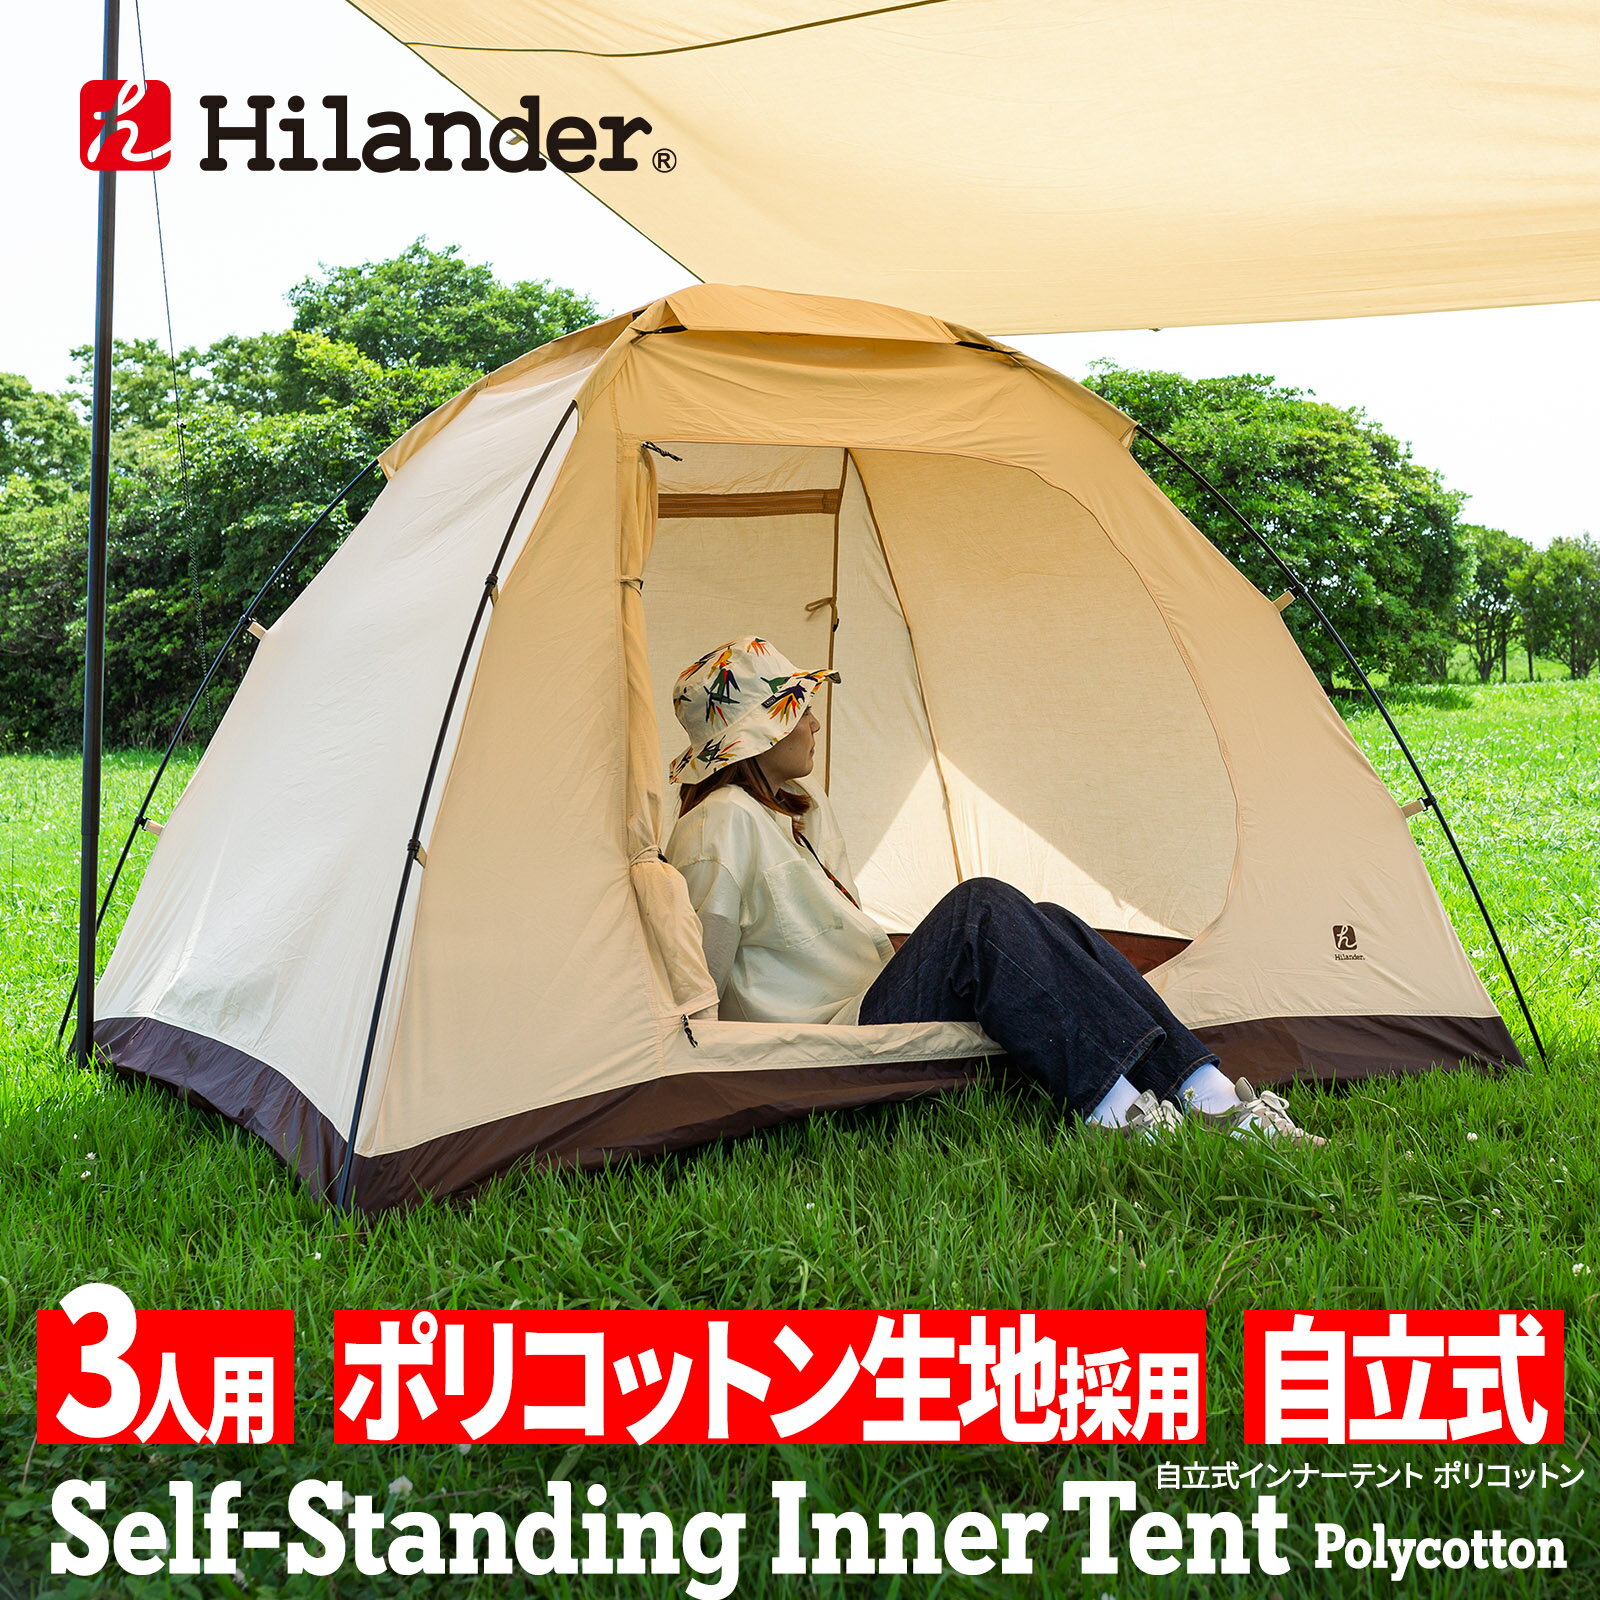 Hilander(ハイランダー) 自立式インナーテント ポリコットン2(アルミフレーム仕様) 【1年保証】 3人用 HCT-018